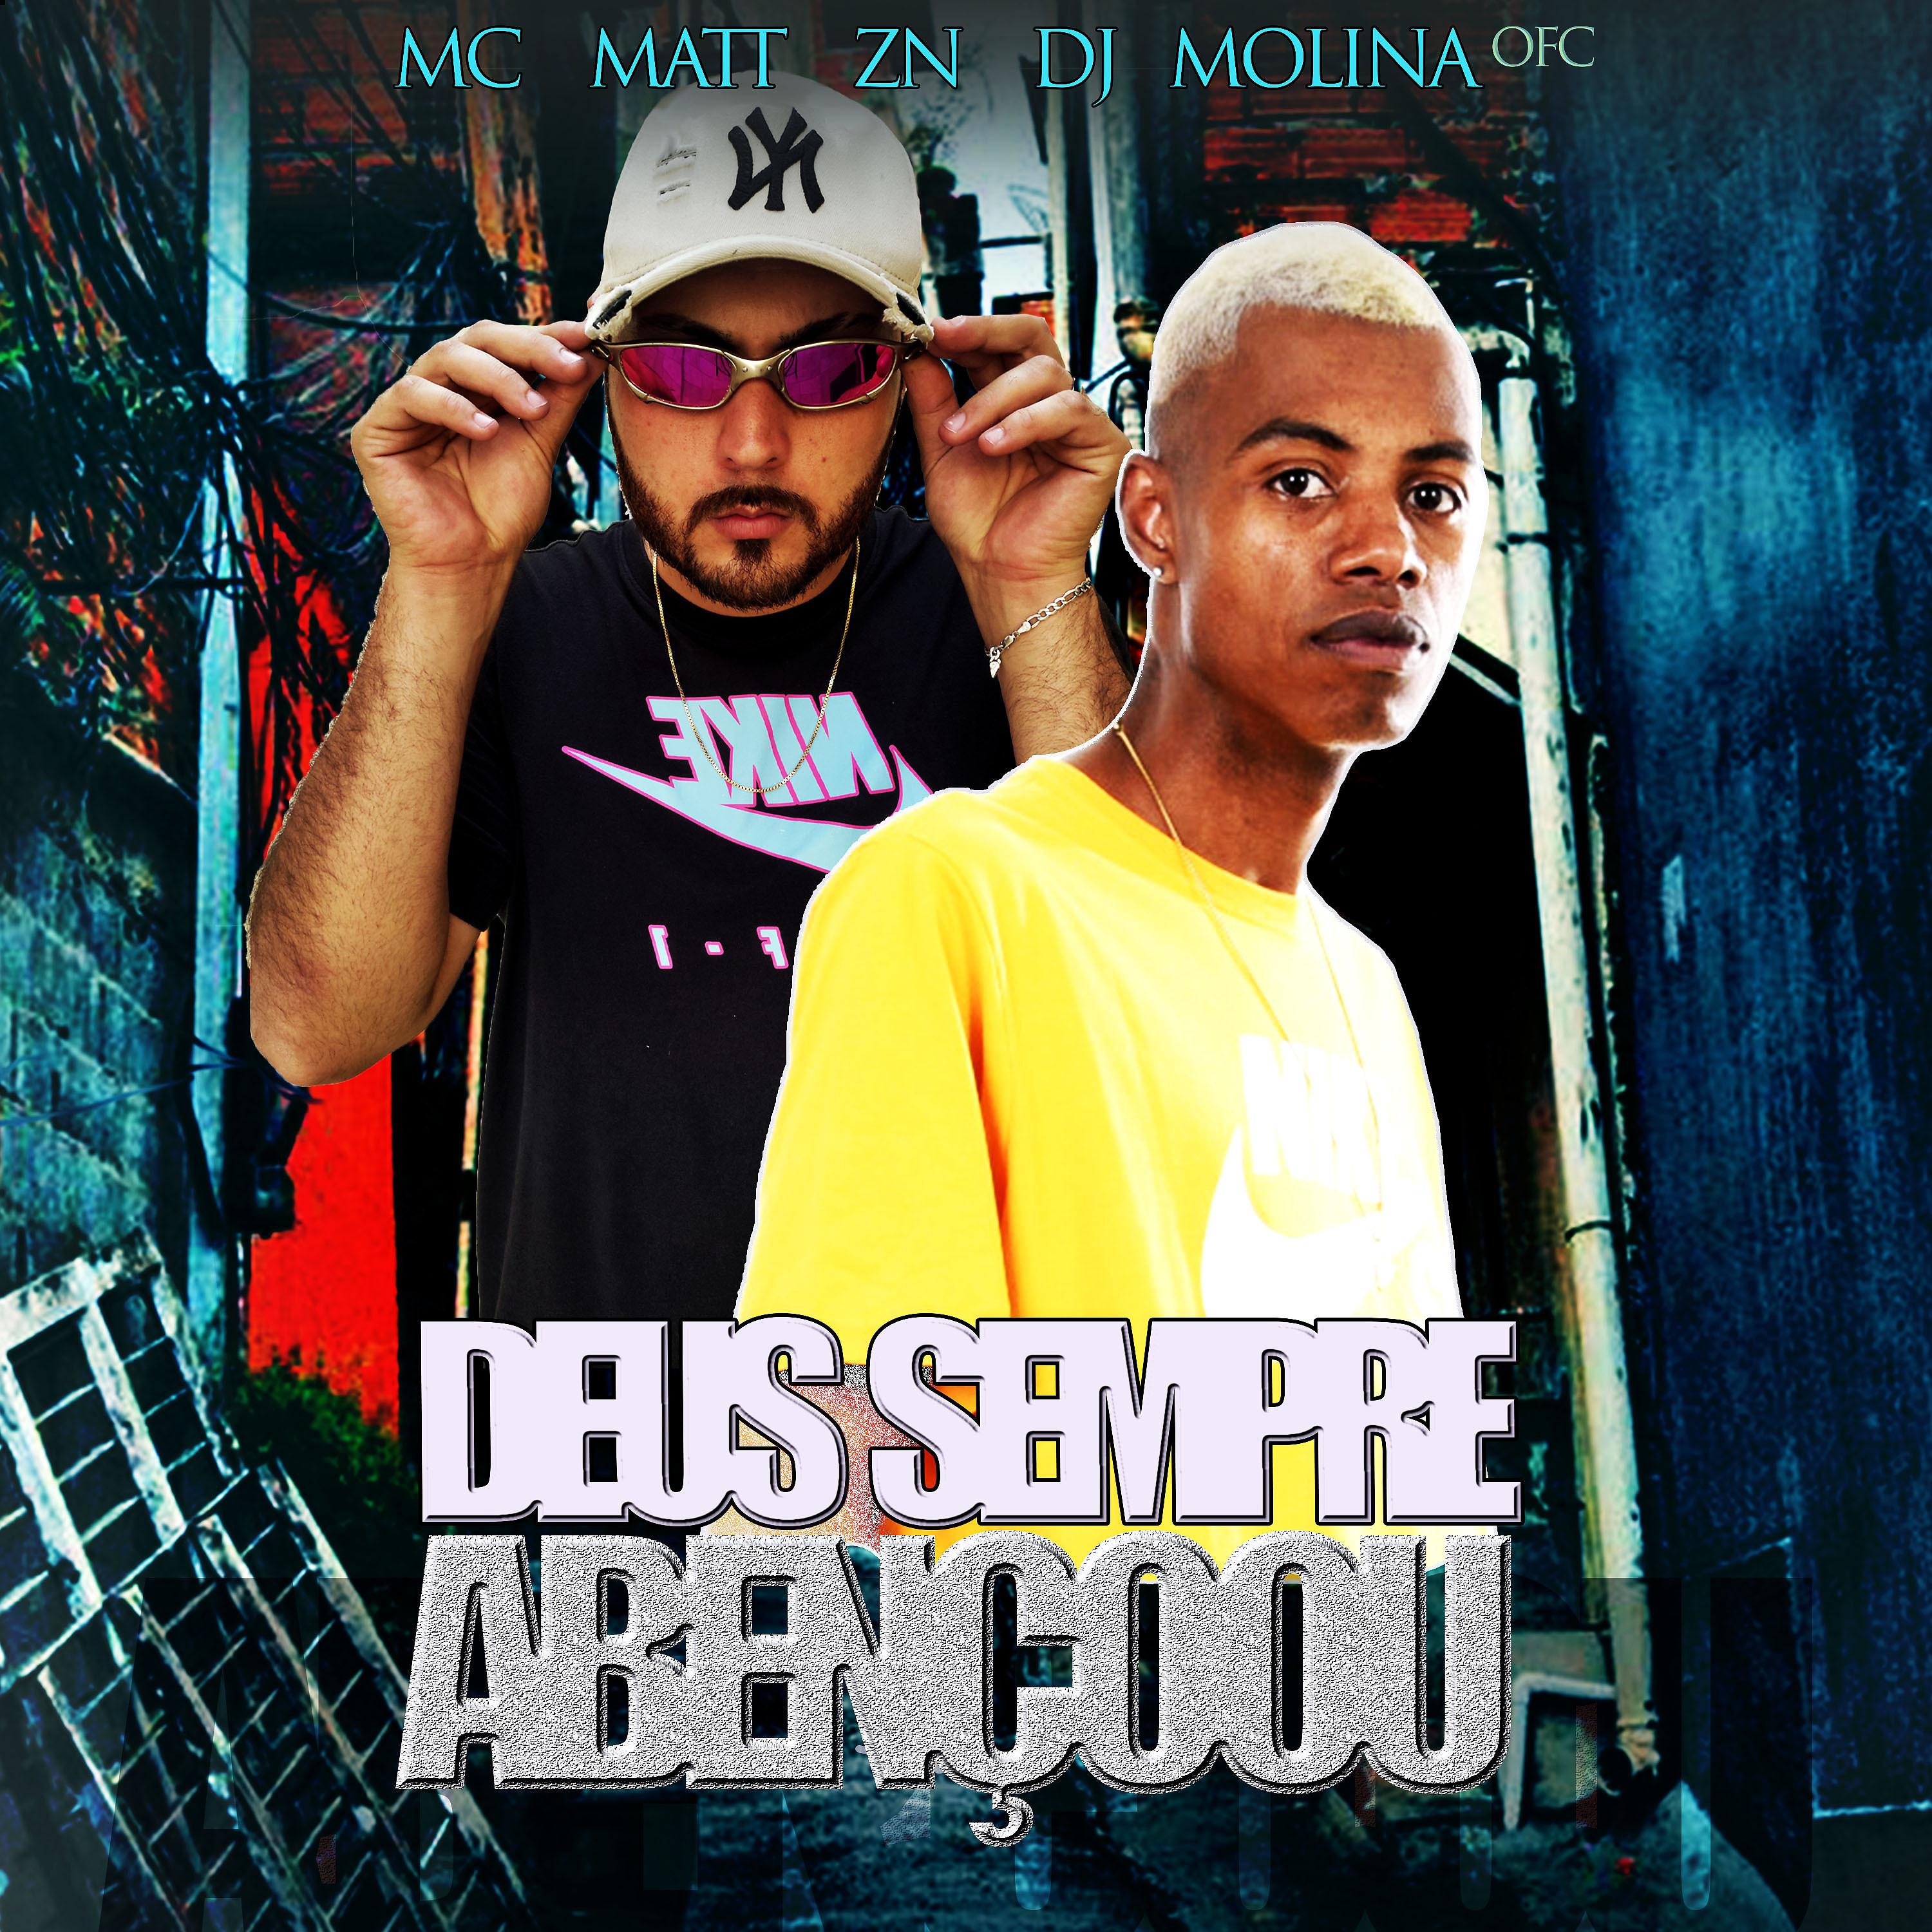 Альбом Deus Sempre Abençoou исполнителя mc matt zn, DJ MOLINA OFC